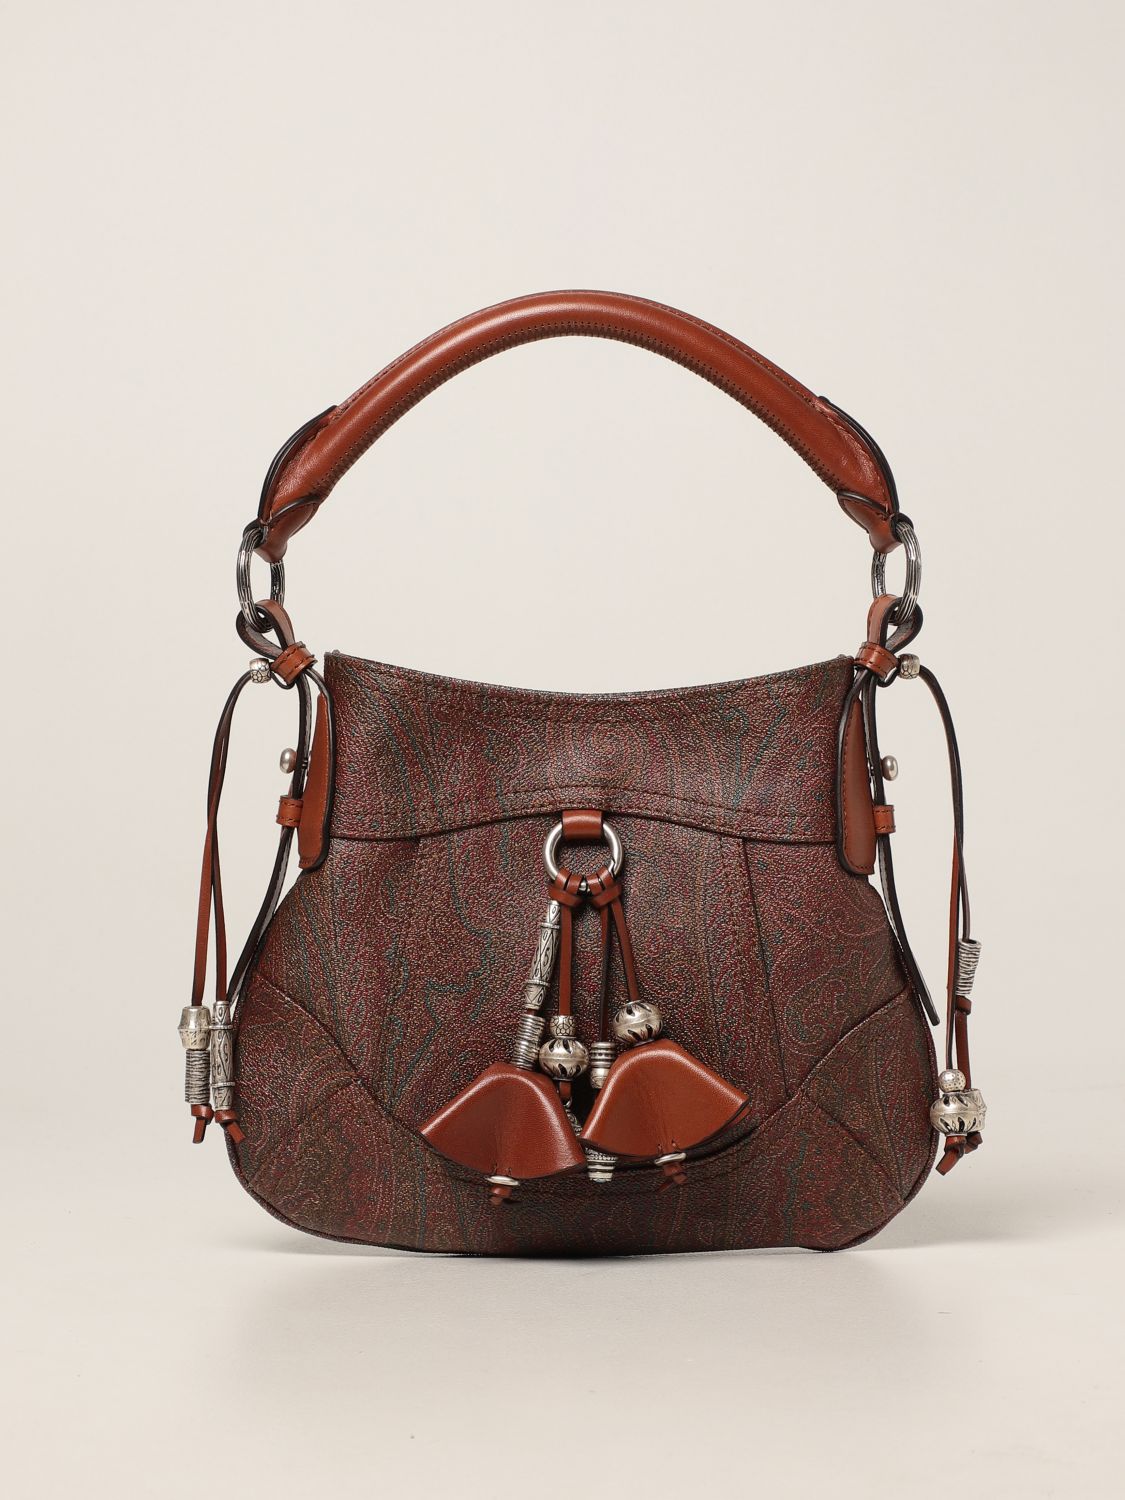 Etro Milano Vintage Paisley Canvas Handbag Tote Bag Satchel